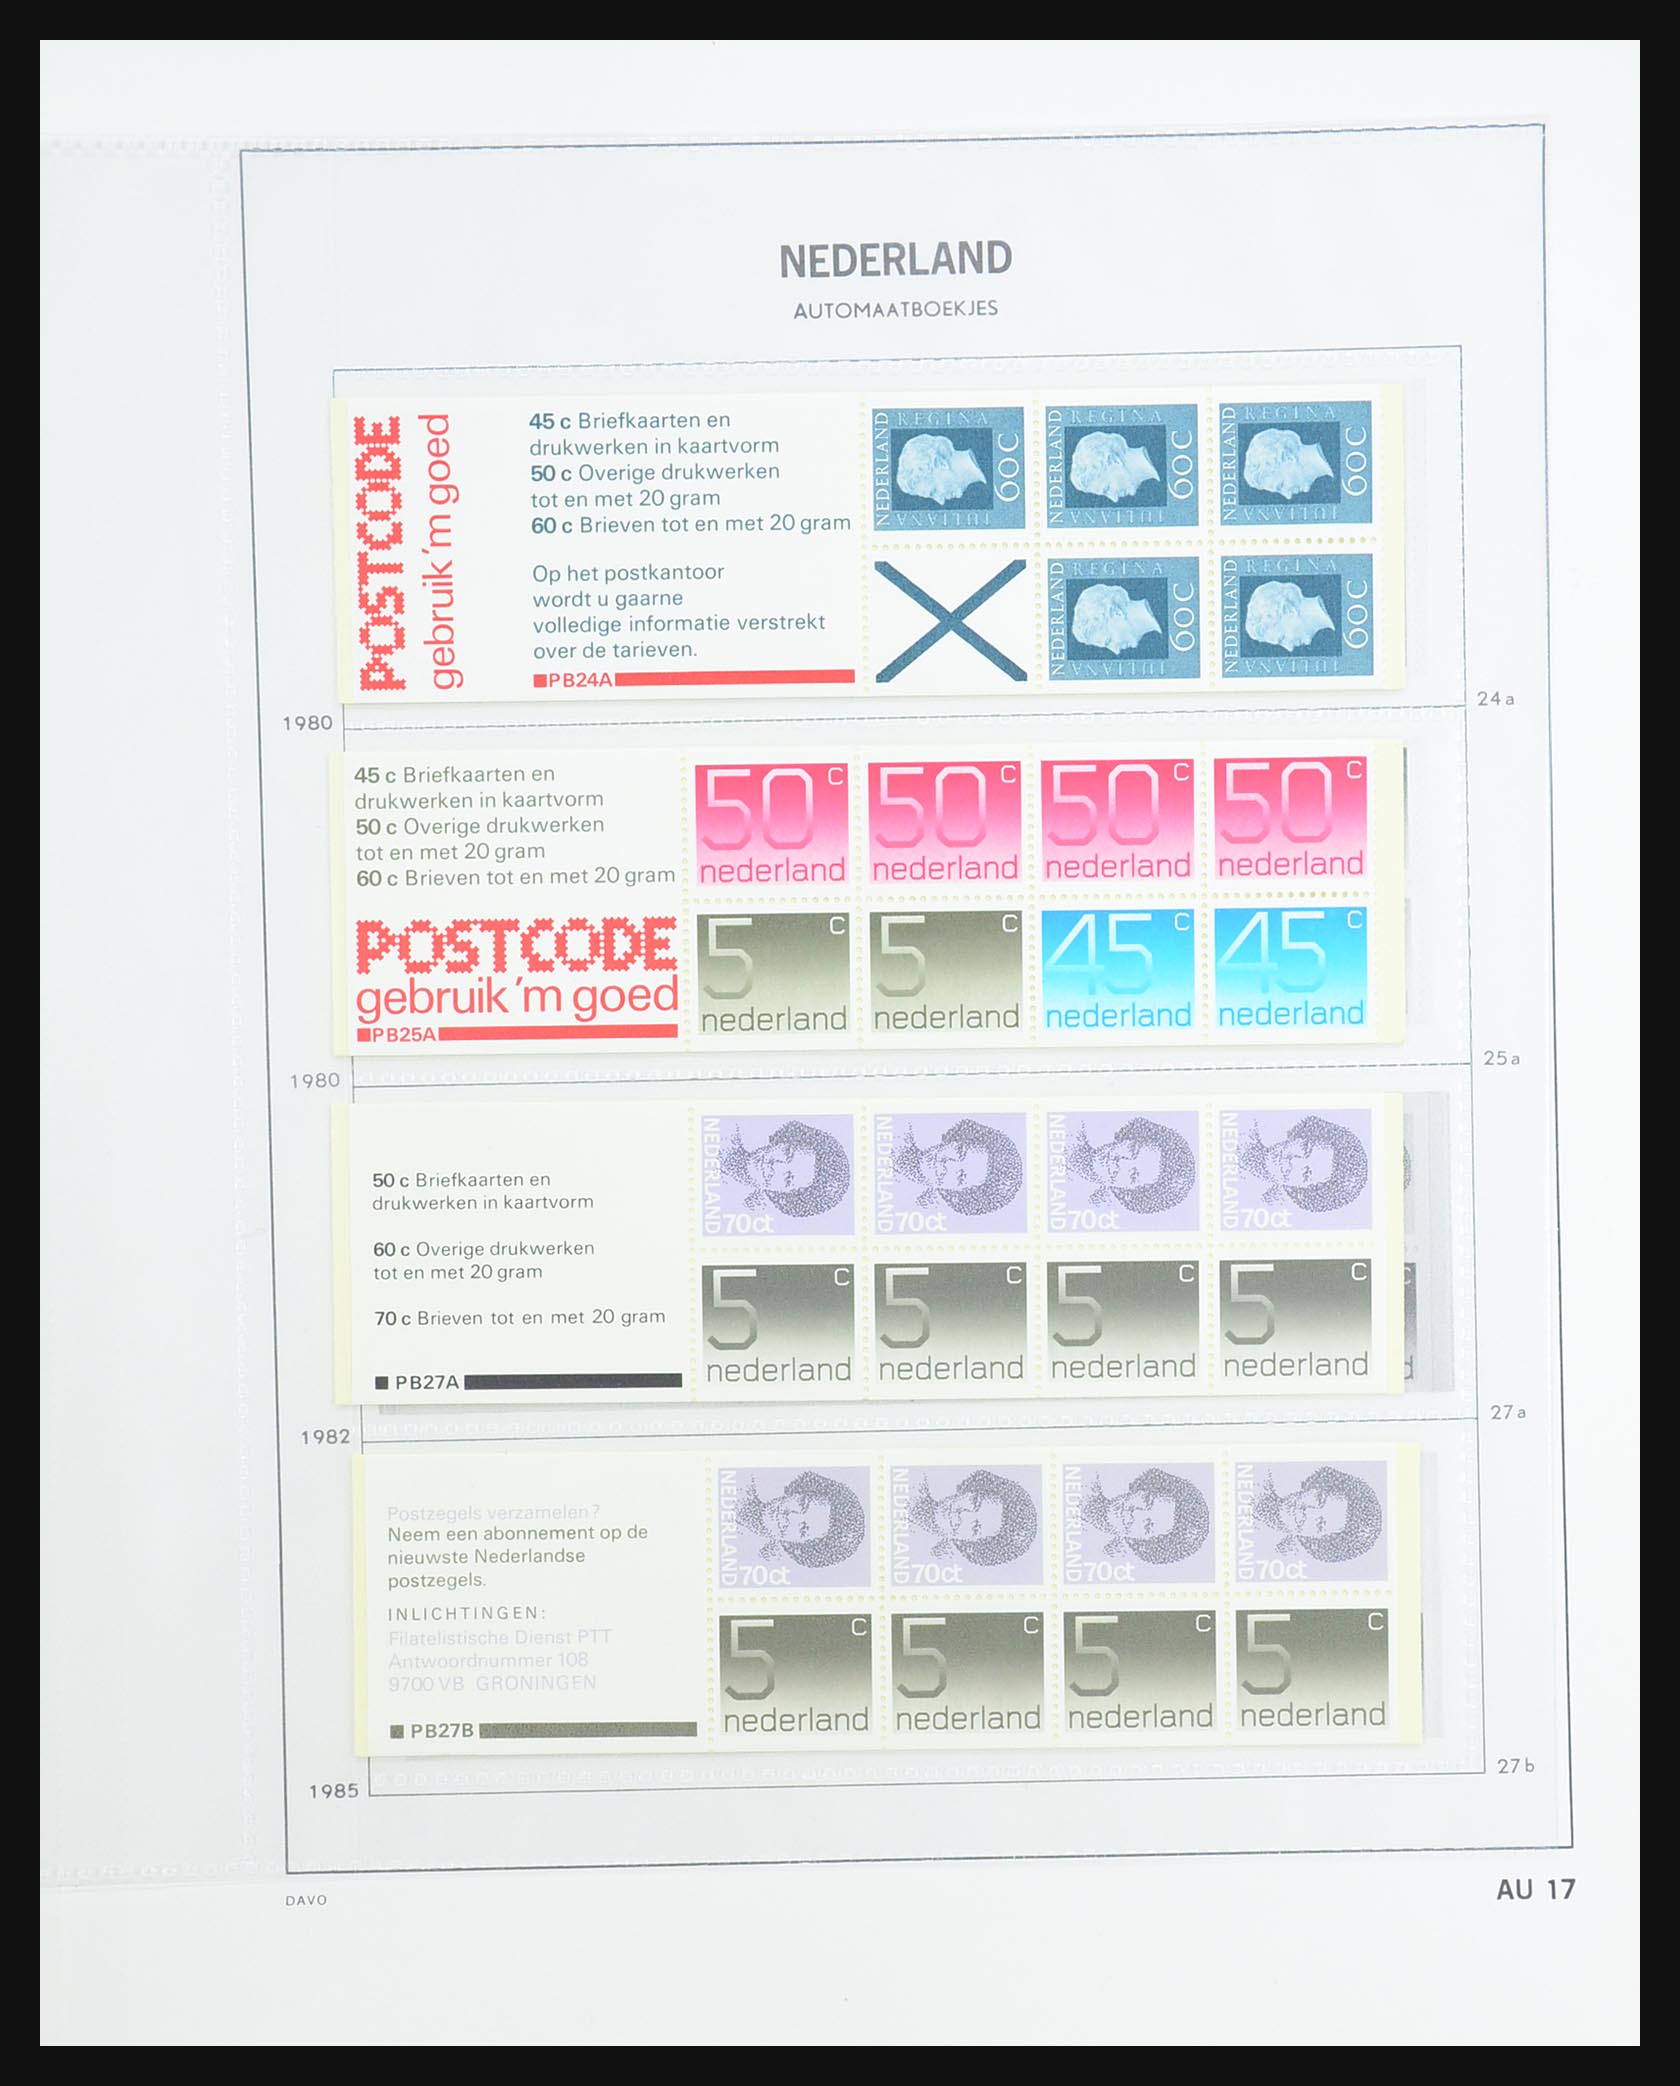 31317 019 - 31317 Netherlands stamp booklets 1964-2000.